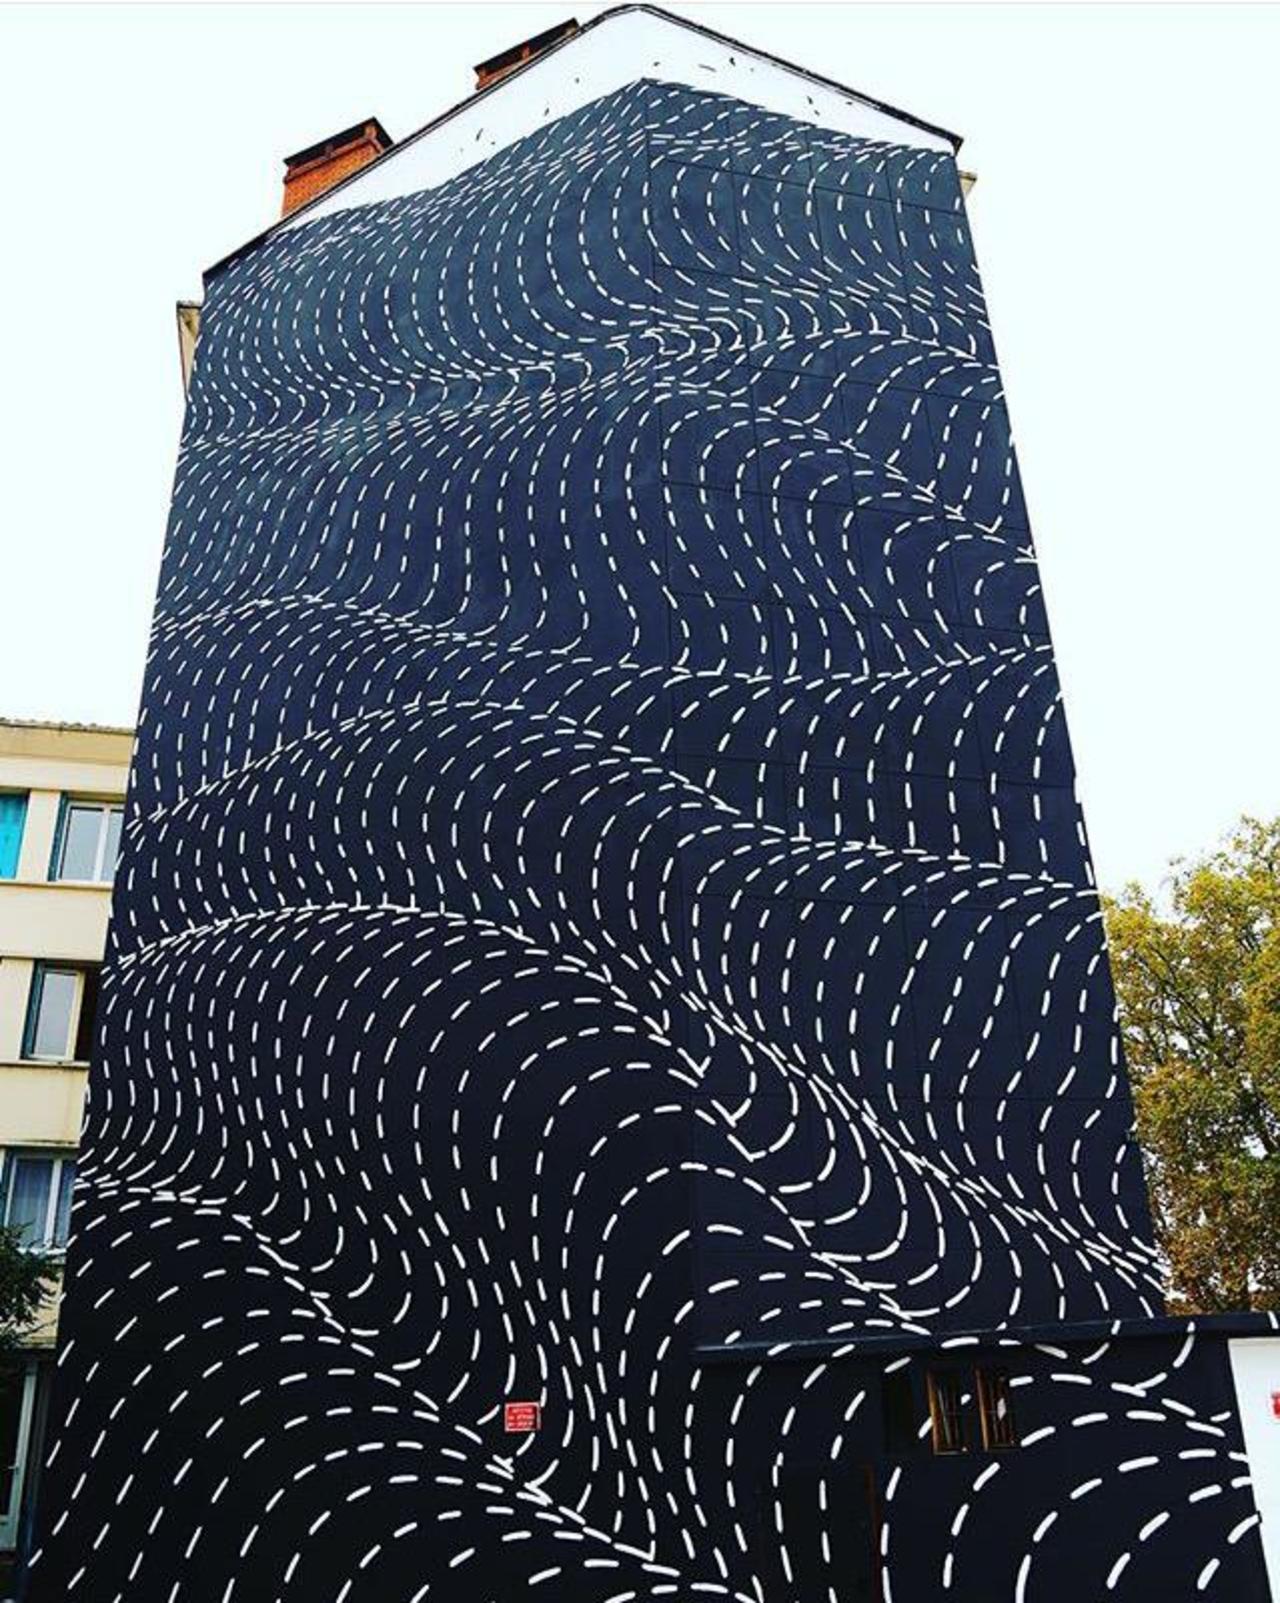 New Street Art by Brendan Monroe's for WOPS ! Festival in Toulouse, France. 

#art #graffiti #mural #streetart https://t.co/TukCVXqDnK